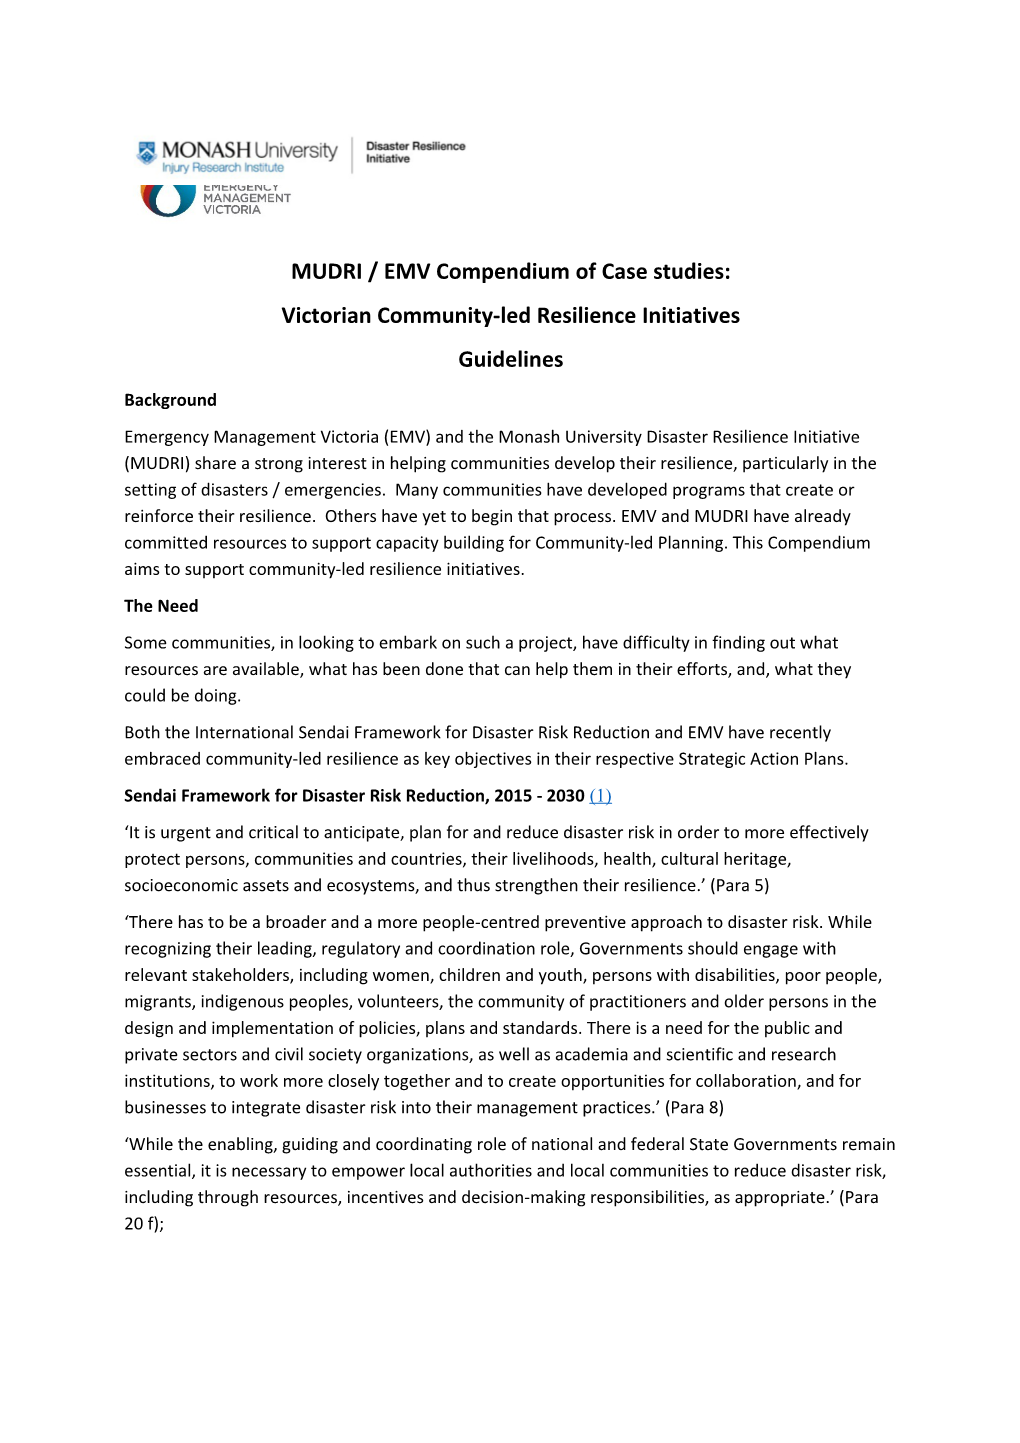 MUDRI / EMV Compendium of Case Studies